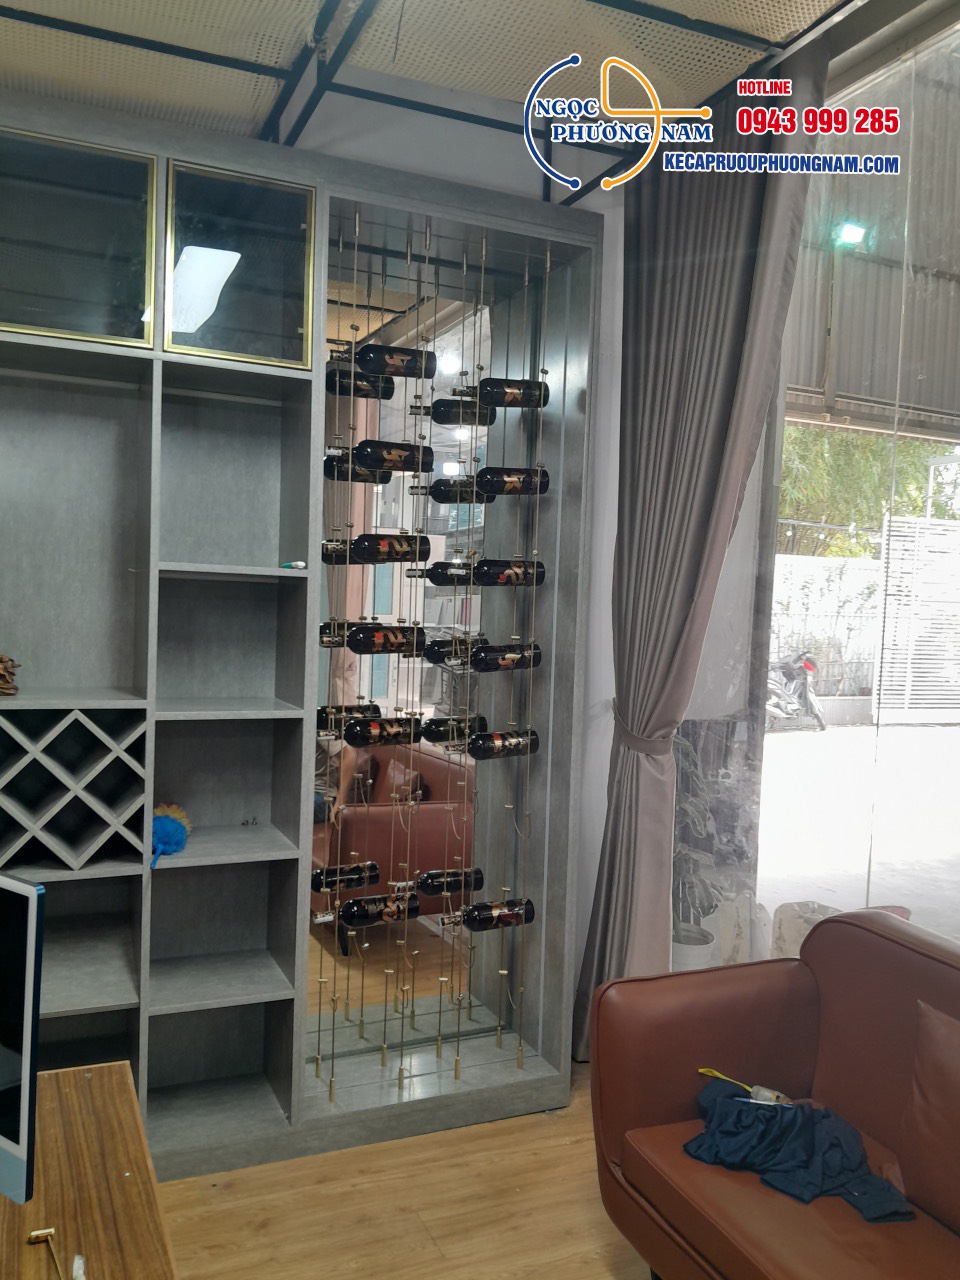 Lắp đặt kệ treo rượu cho khách tại TP.HCM 2 modul